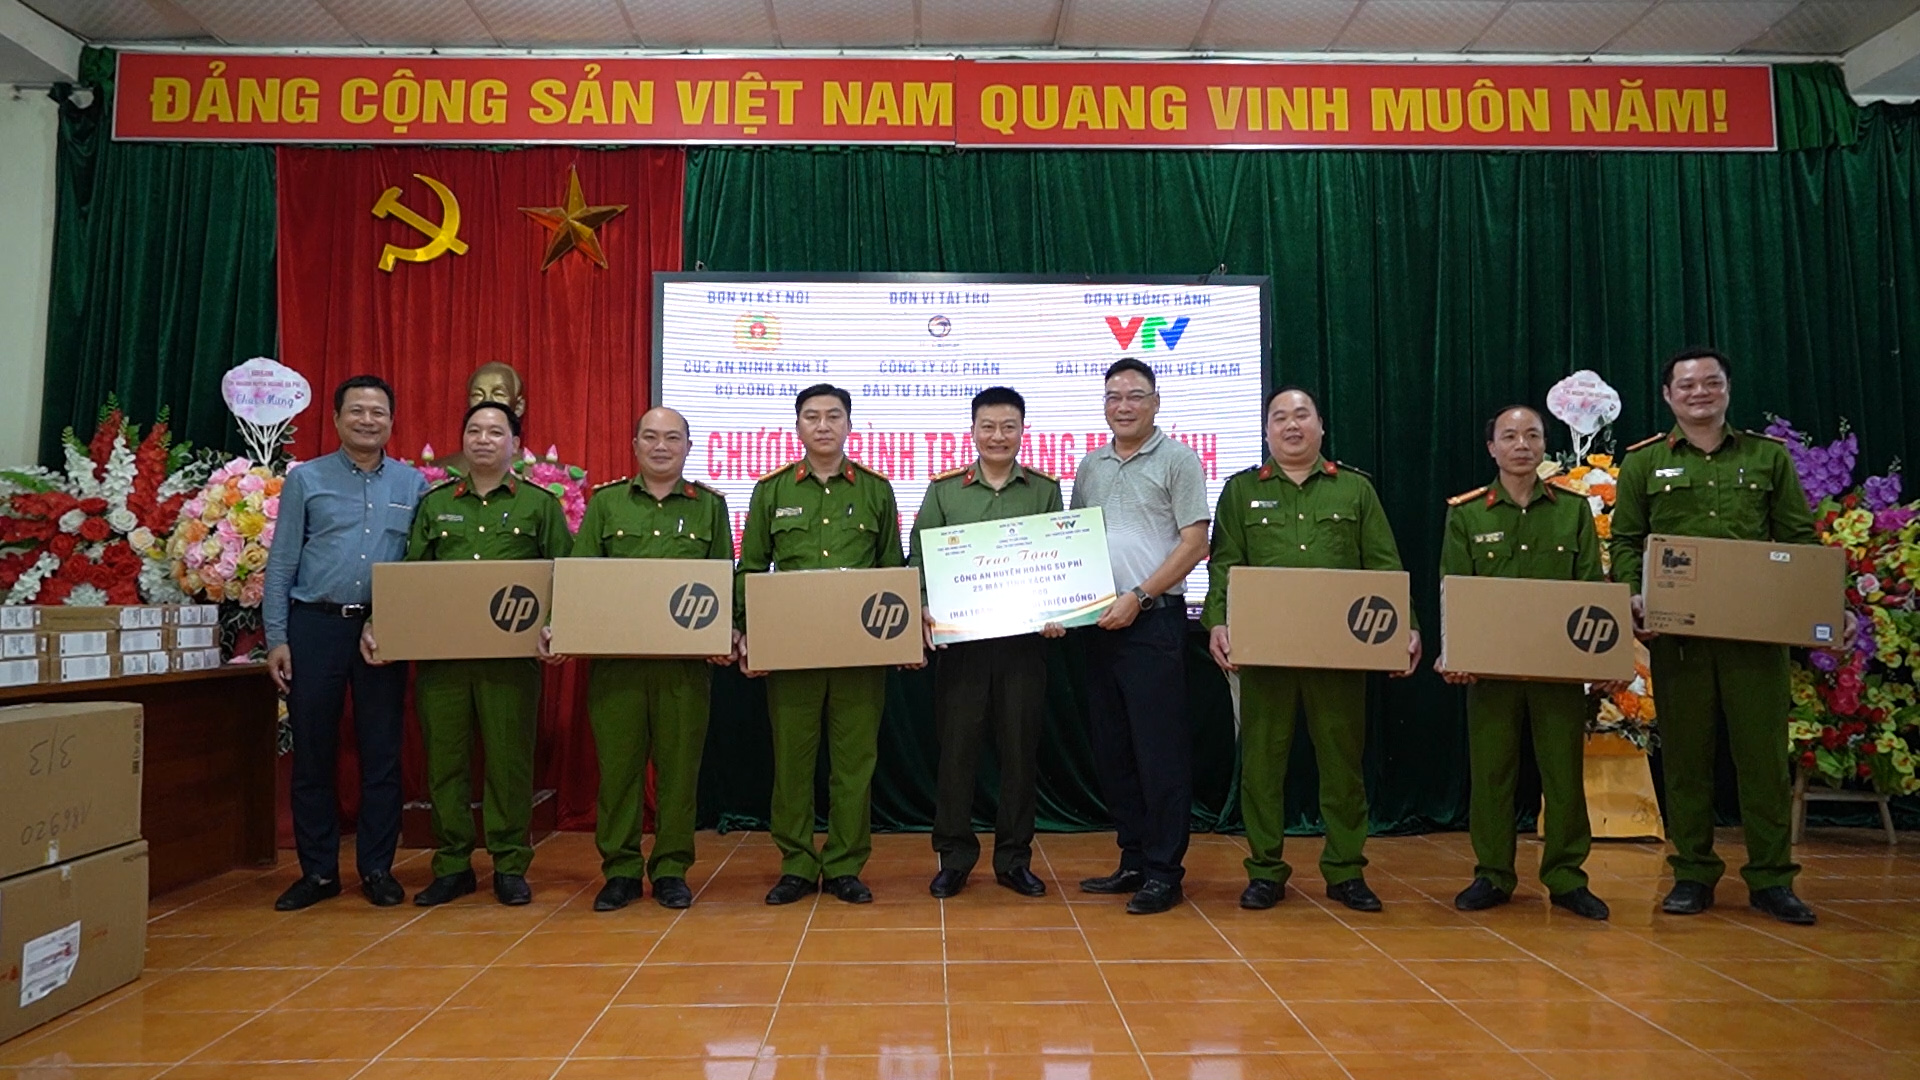 Trao tặng 25 máy tính xách tay cho Công an huyện Hoàng Su Phì